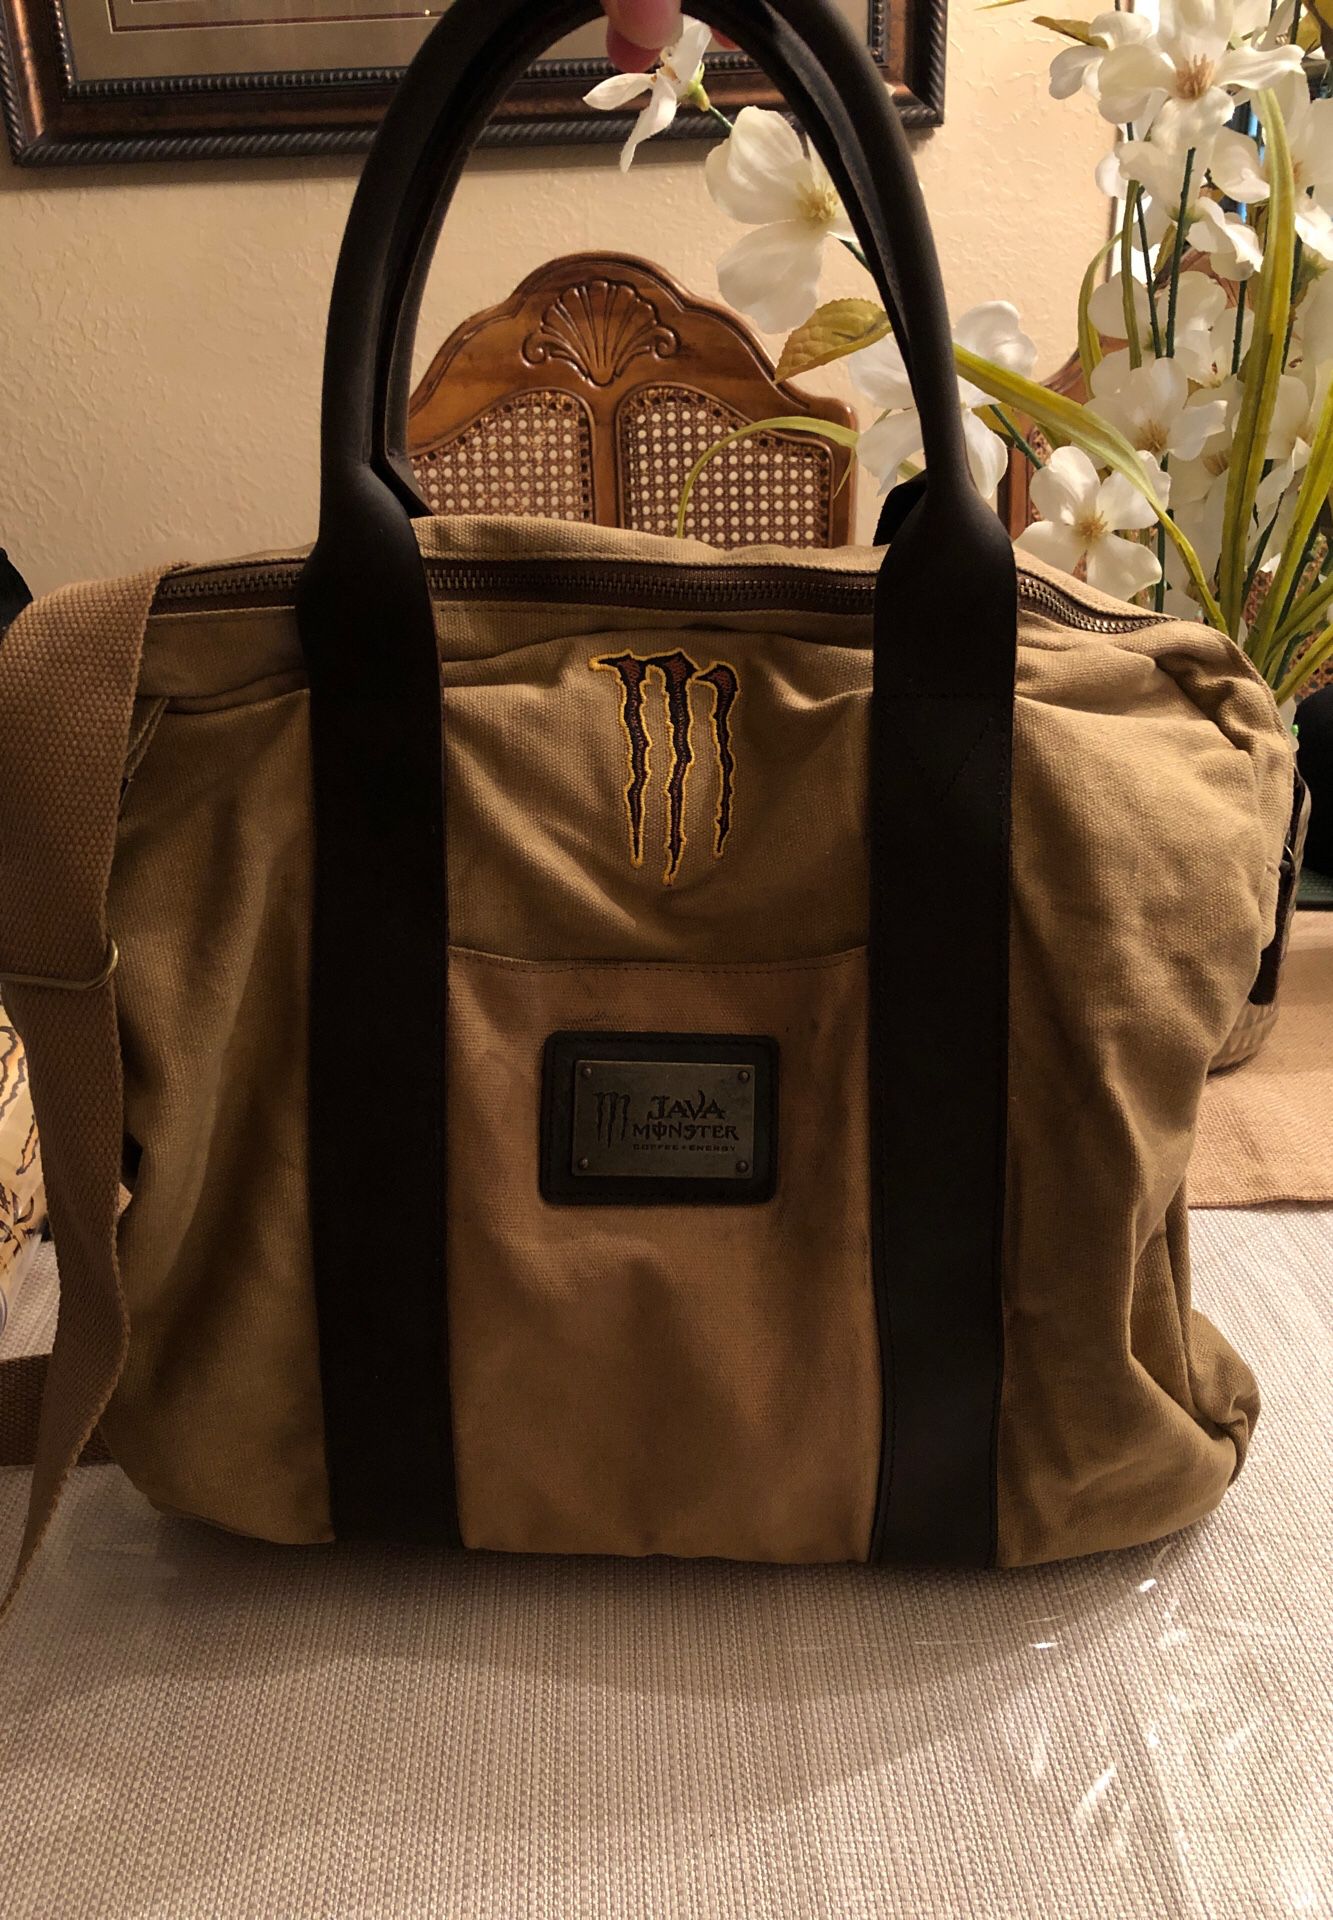 Monster Energy (Java) messenger bag